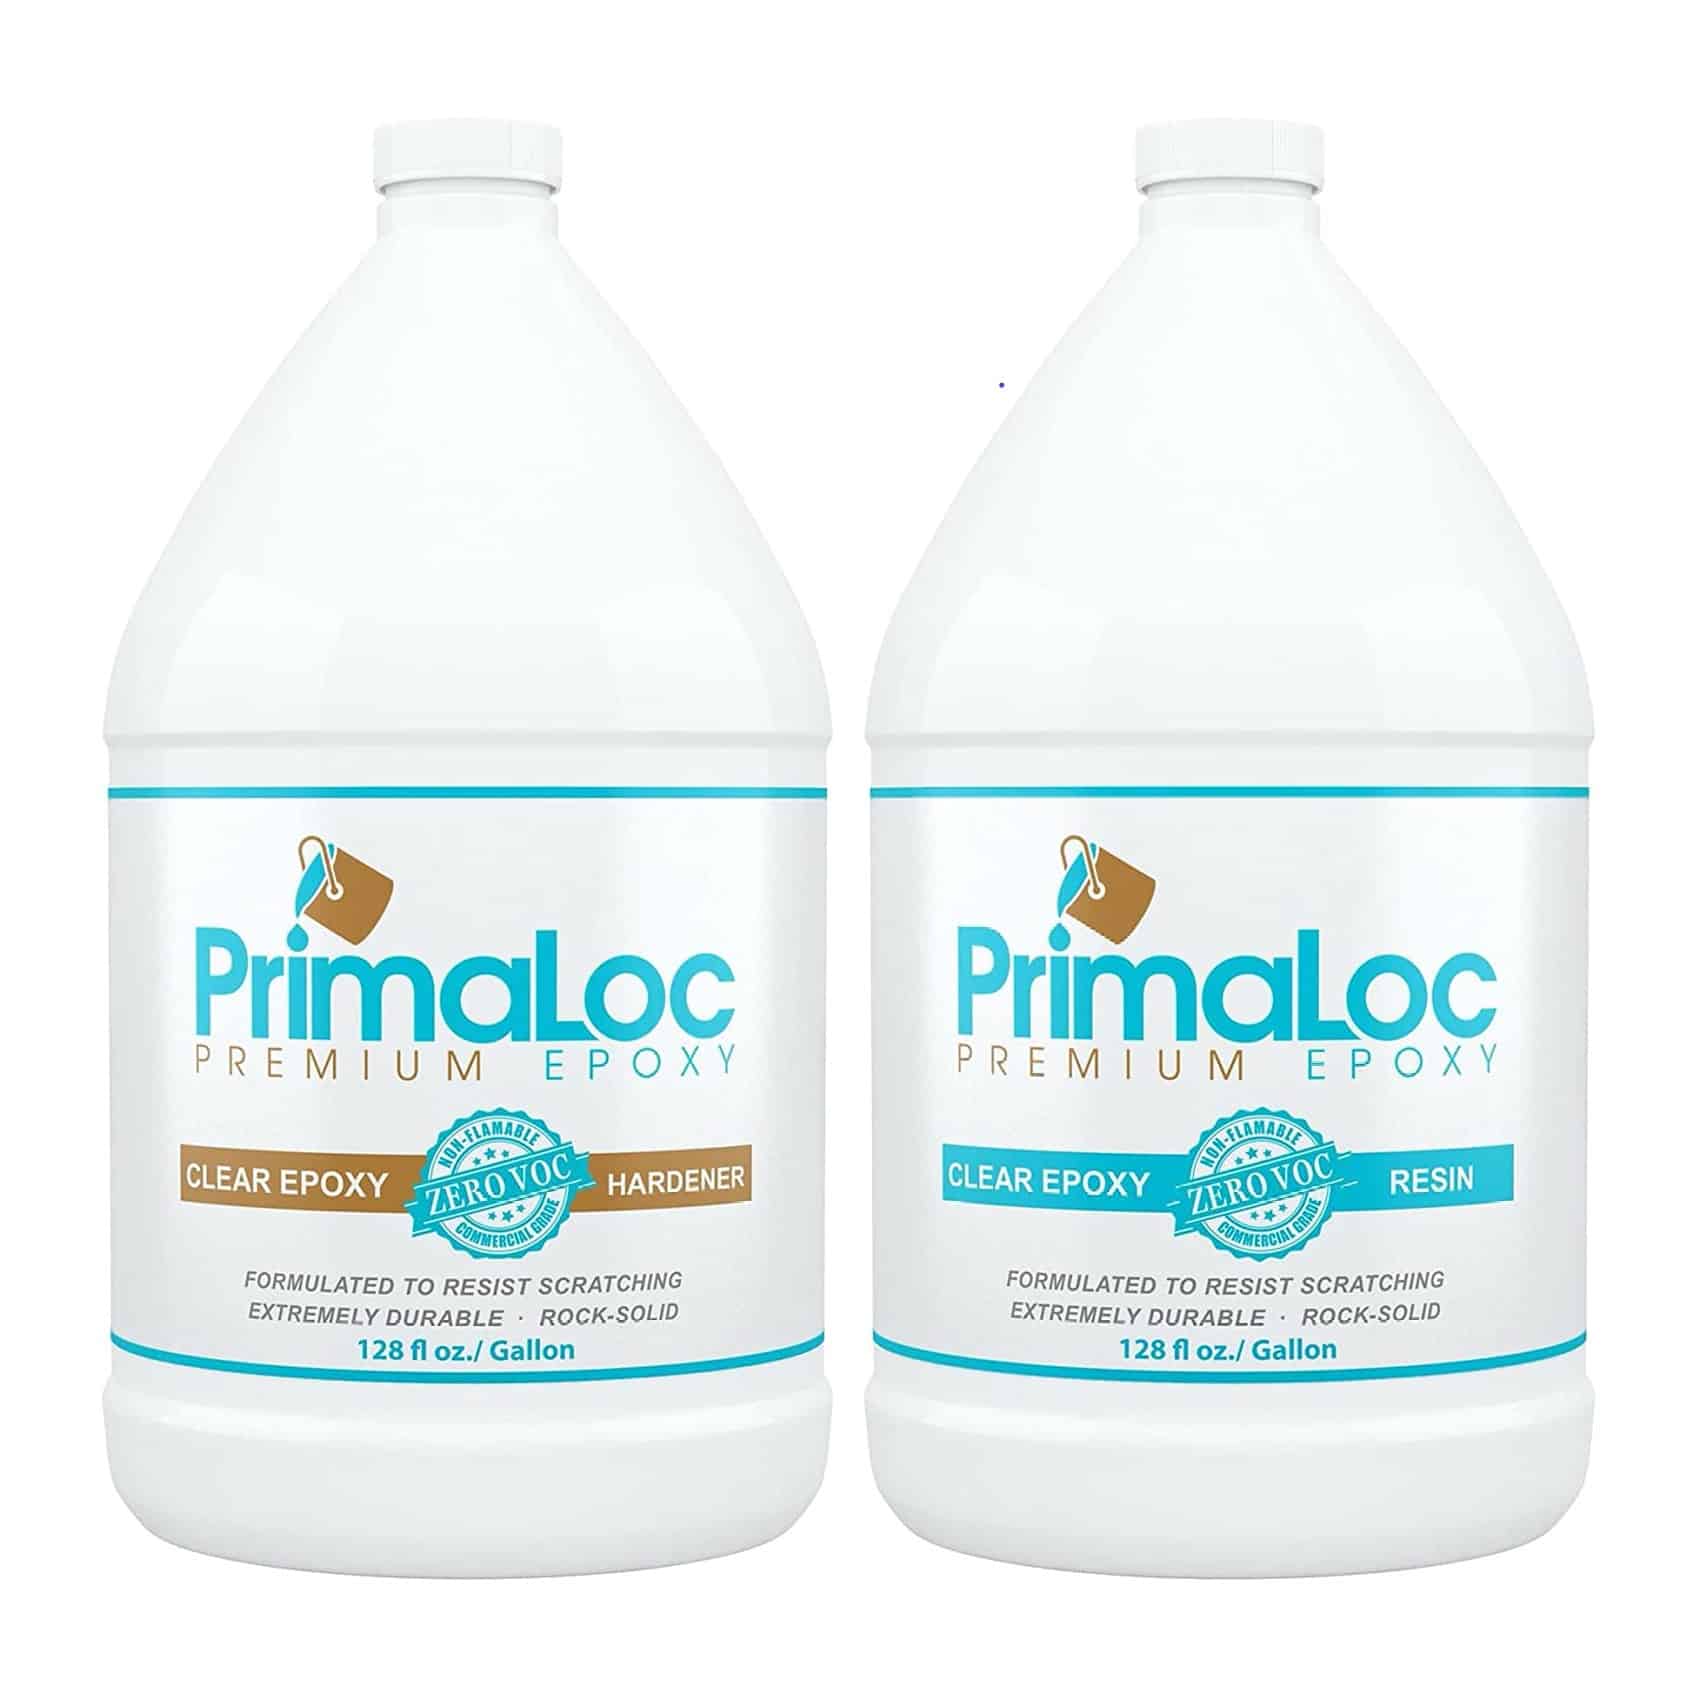 Primaloc Premium Epoxy